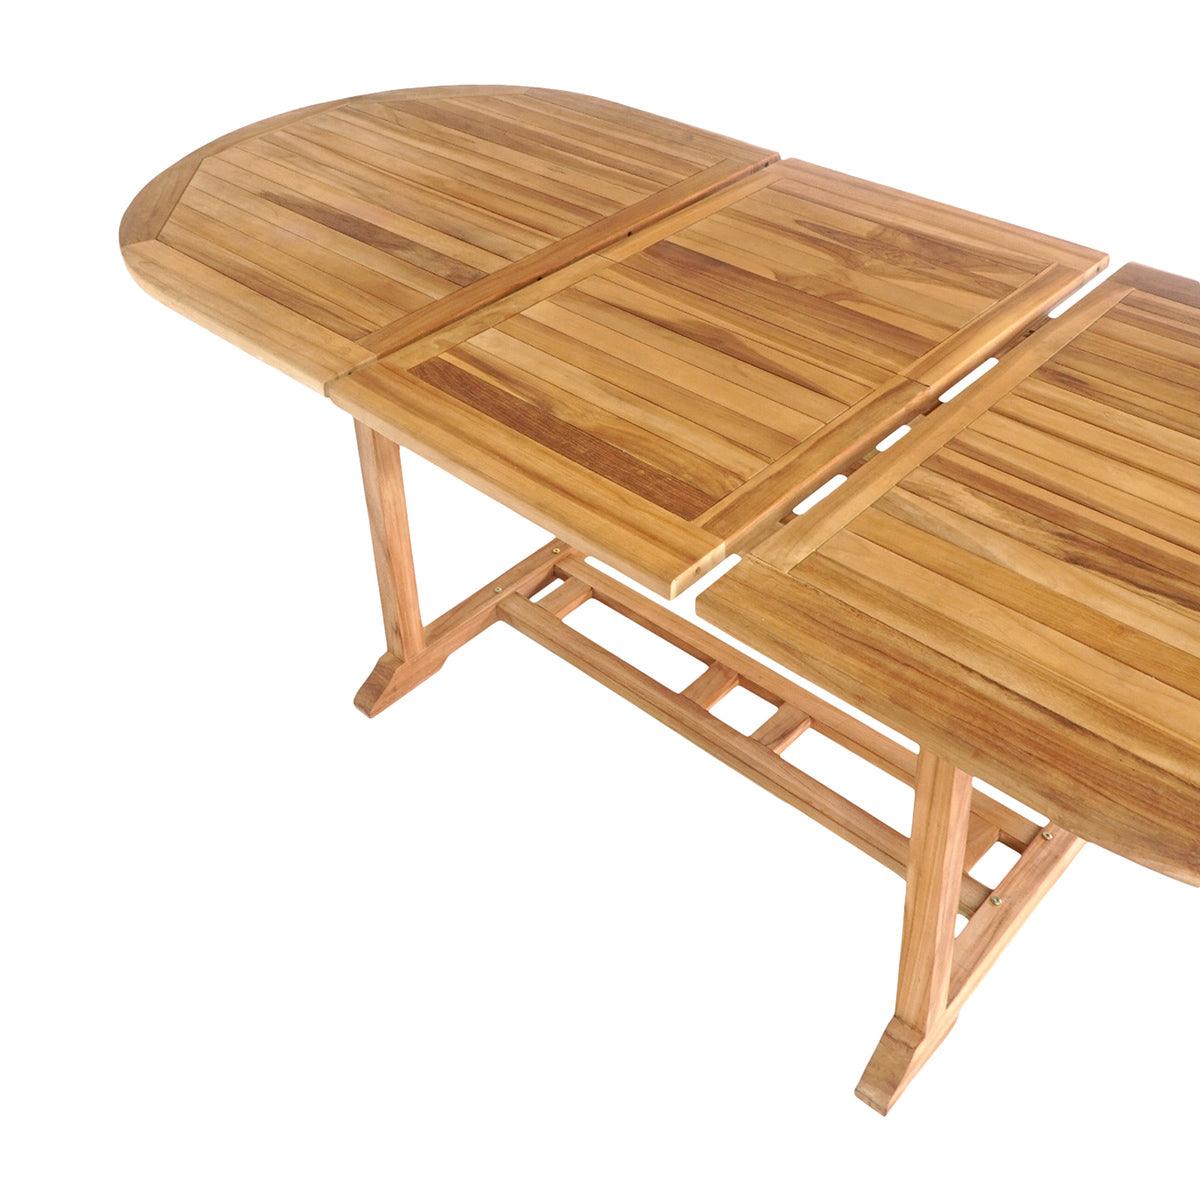 Salamanca Teak Wood Extendable Dining Table - WOO .Design